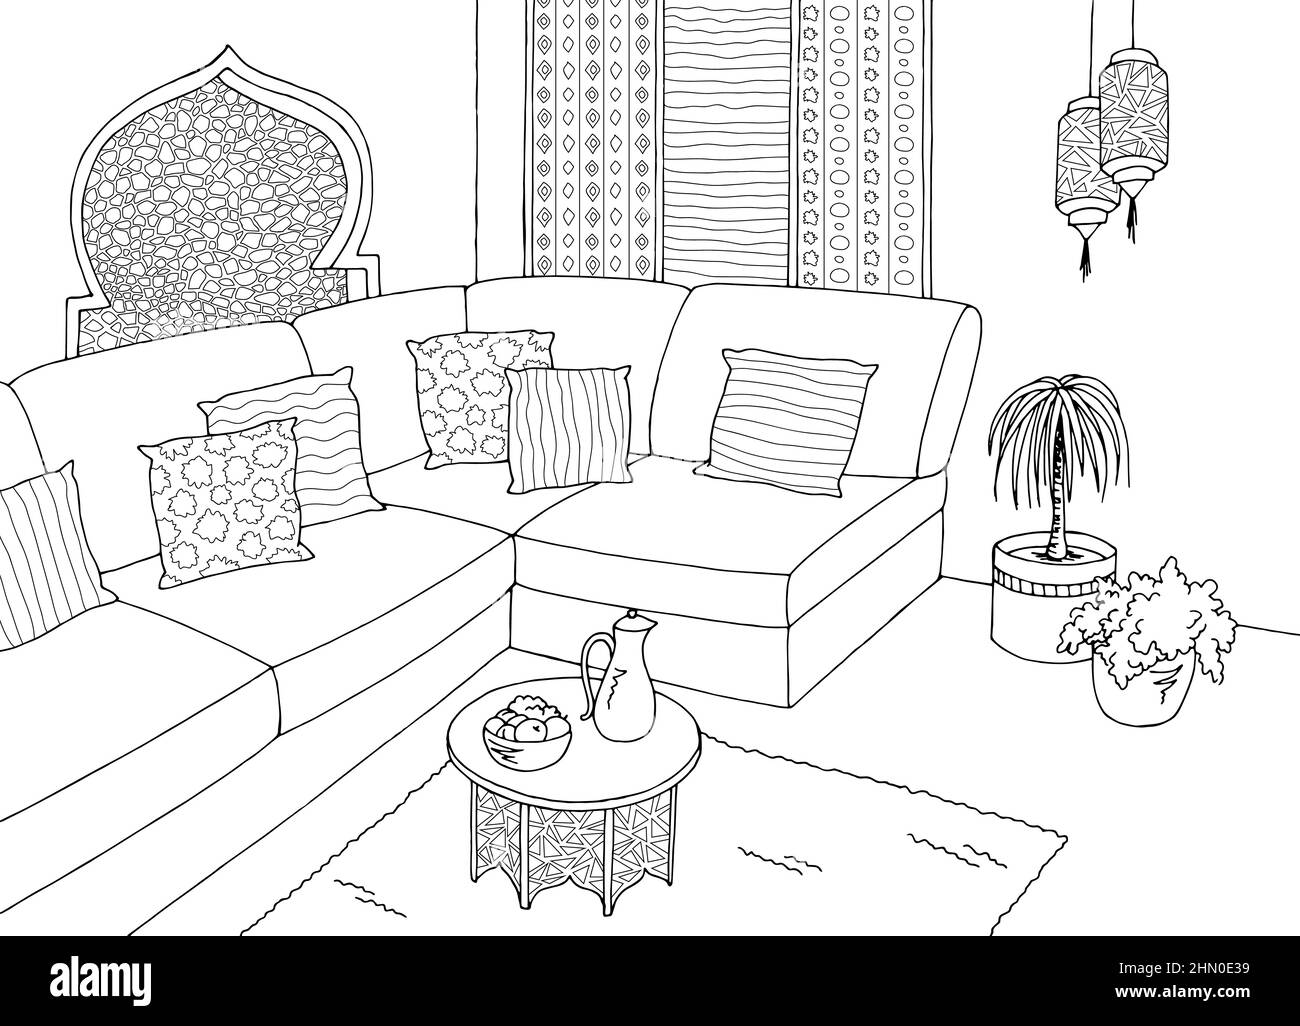 Wohnzimmer Grafik schwarz weiß arabisch Heim Interieur Skizze Illustration vektor Stock Vektor